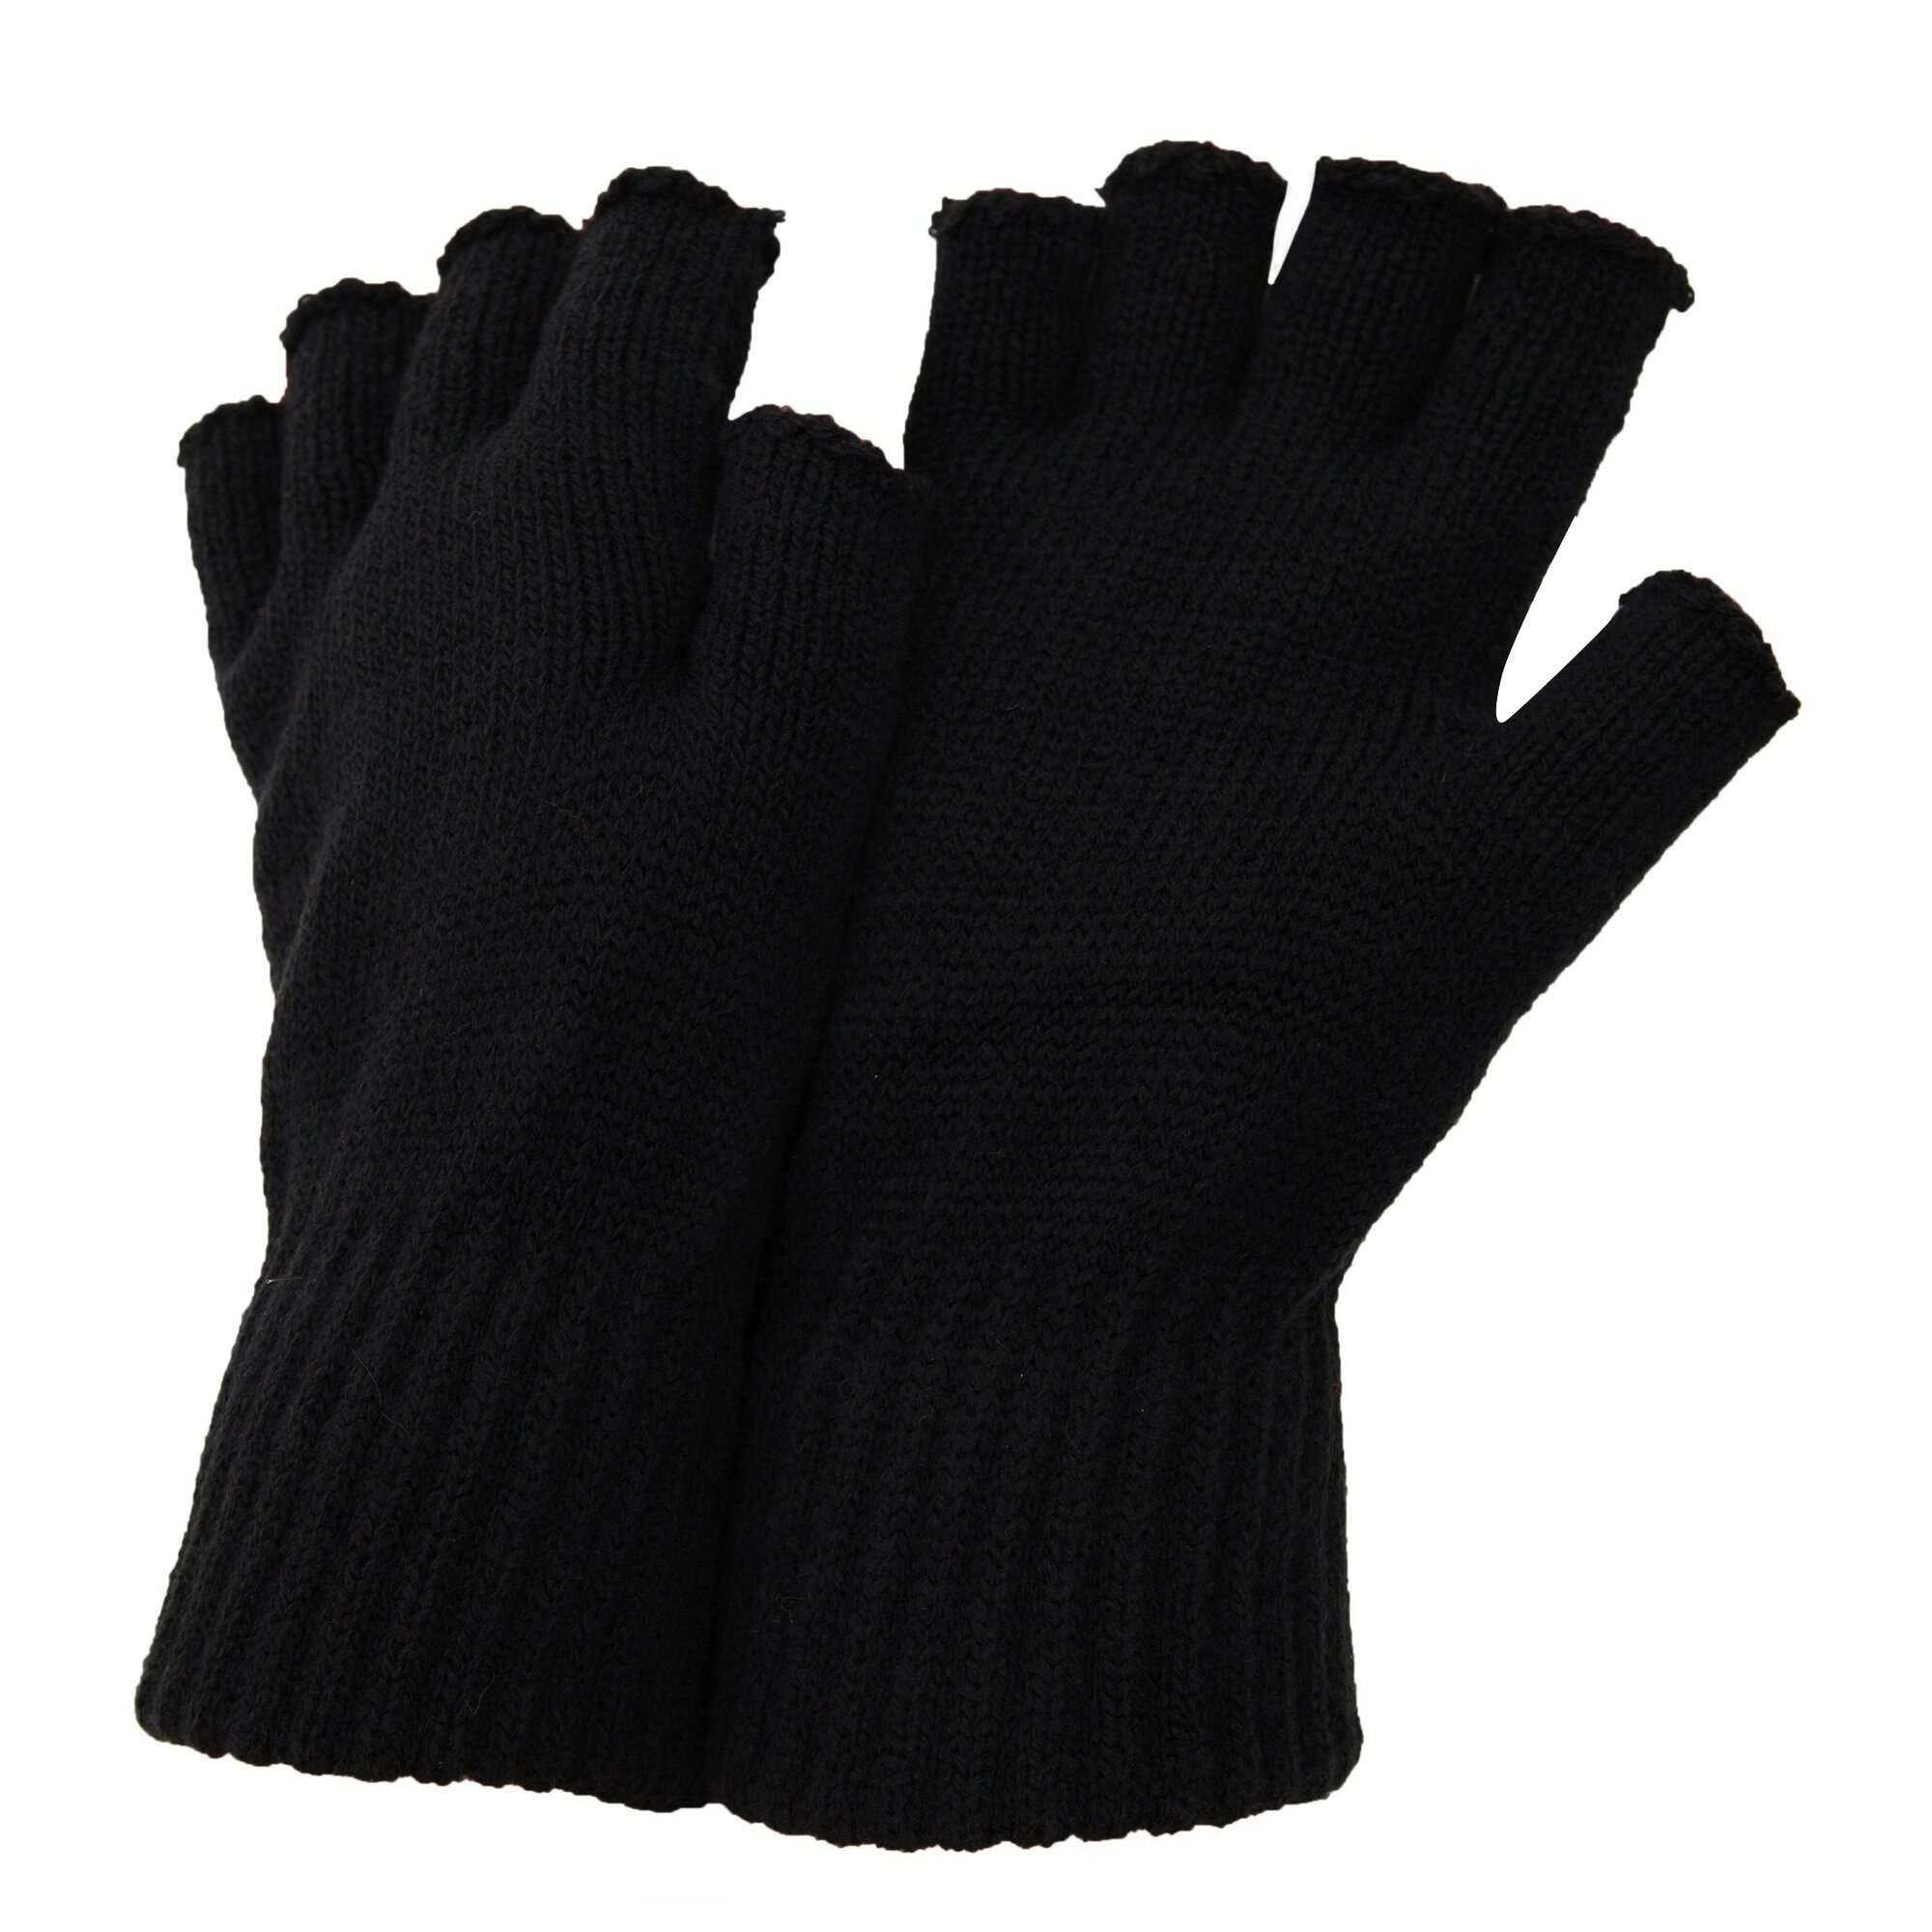 (フロソ) FLOSO 冬用 フィンガーレスグローブ 指なし手袋 フィンガーカット手袋 男性用 